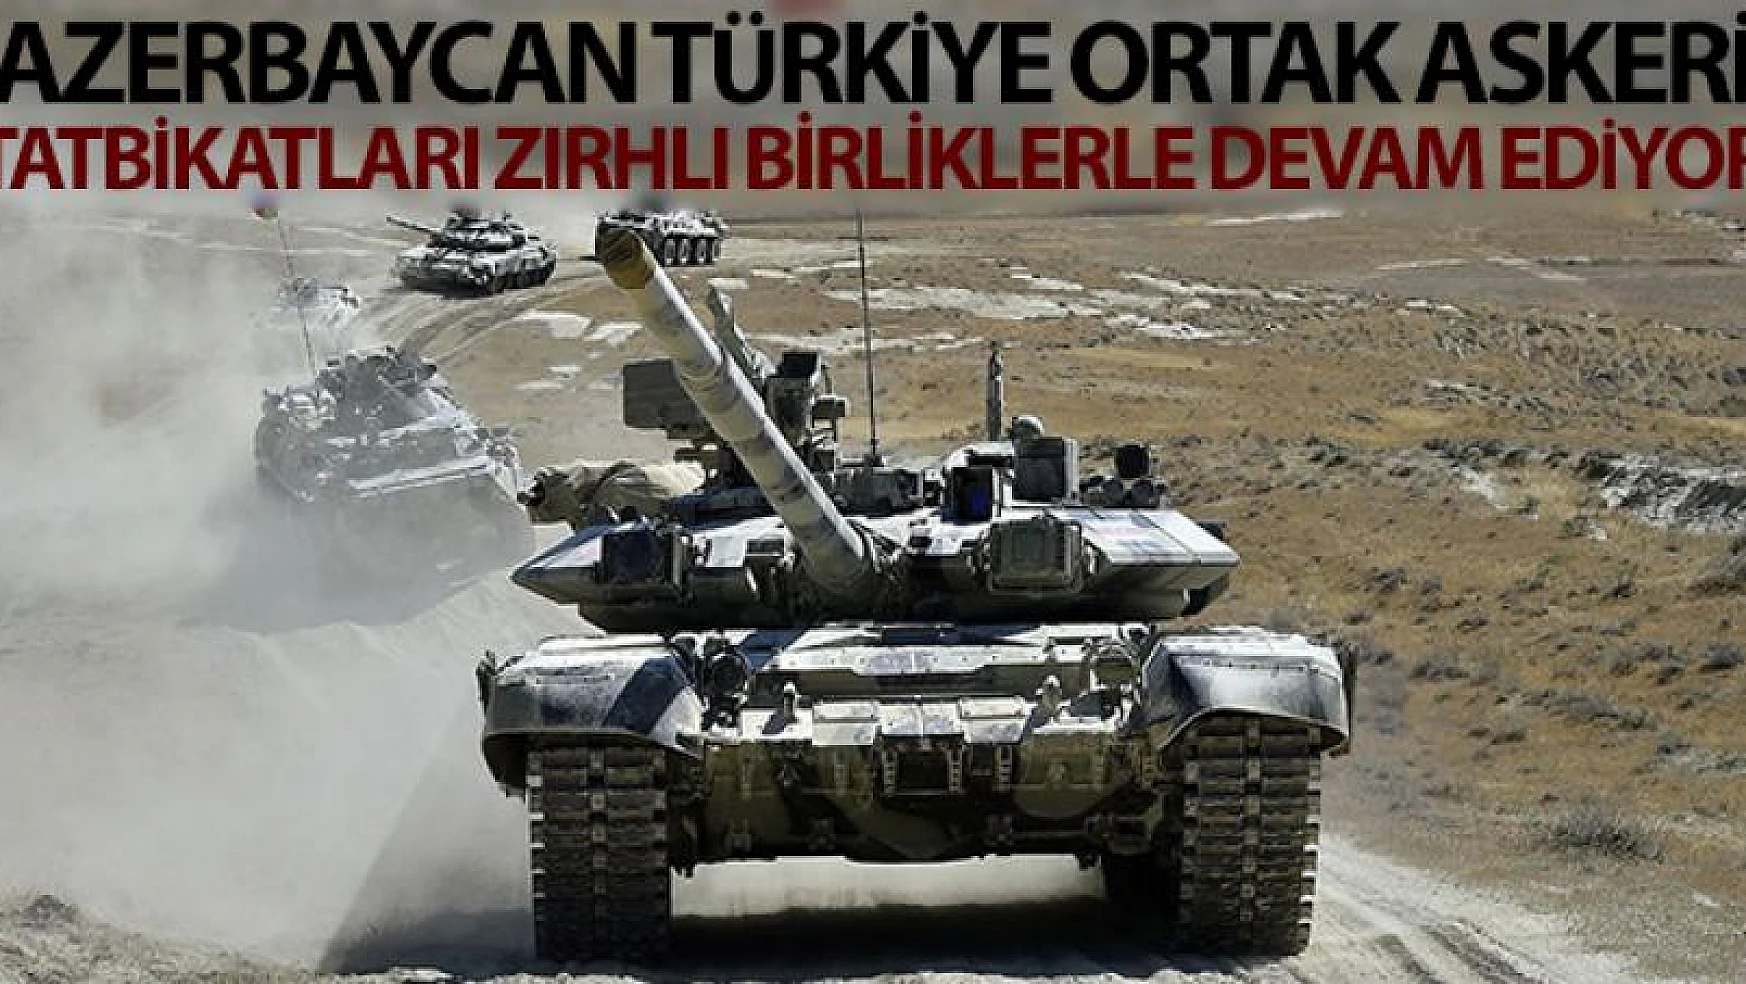 Azerbaycan-Türkiye ortak askeri tatbikatları zırhlı birliklerle devam ediyor